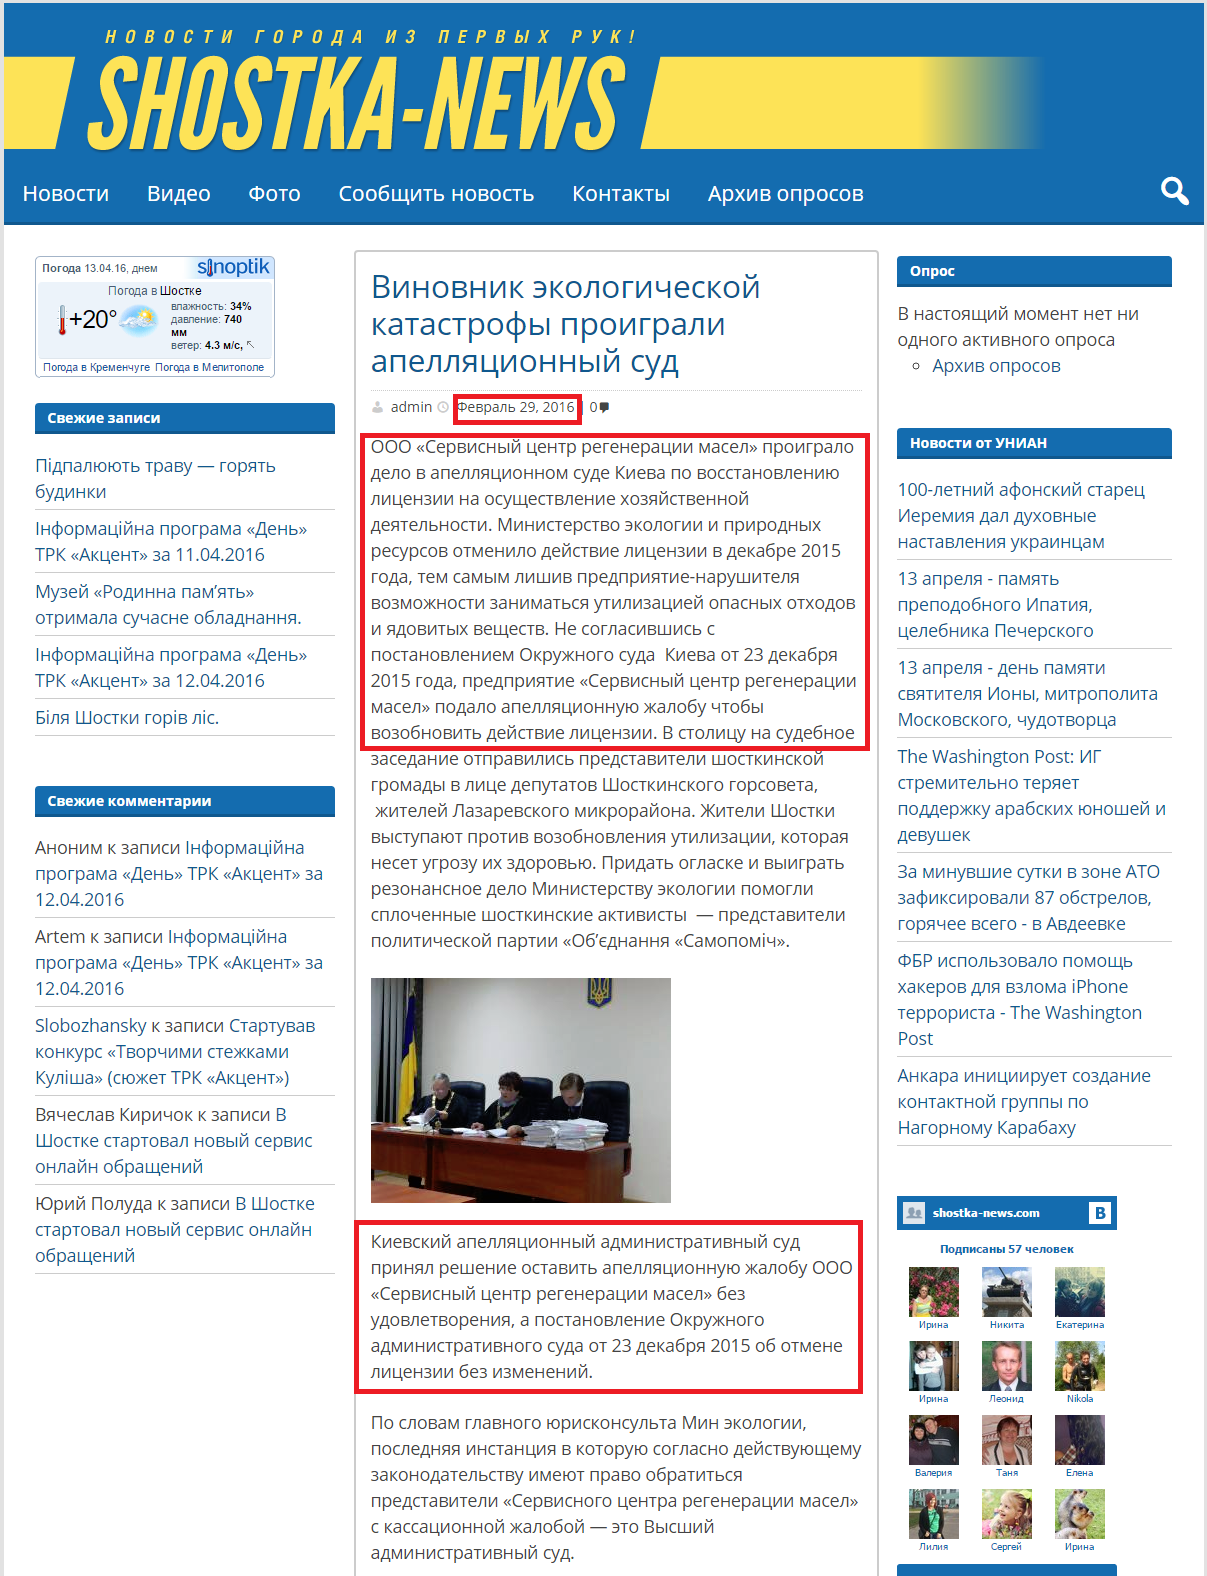 http://www.shostka-news.com/vinovnik-ekologicheskoj-katastrofy-proigrali-apellyatsionnyj-sud/